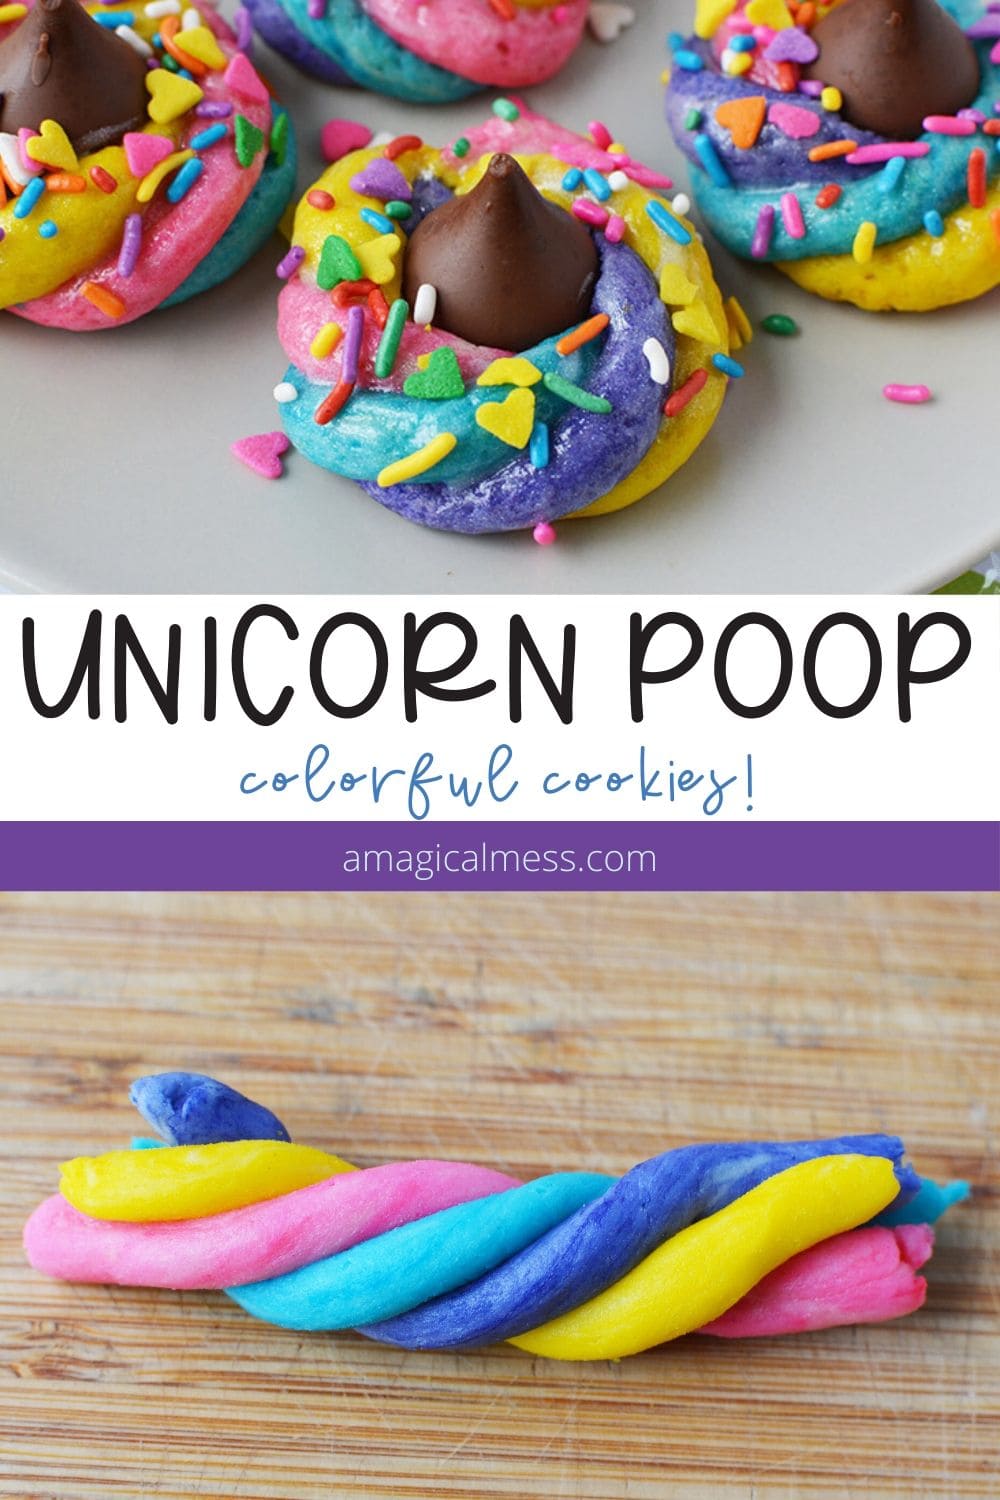 Colorful unicorn poop cookies